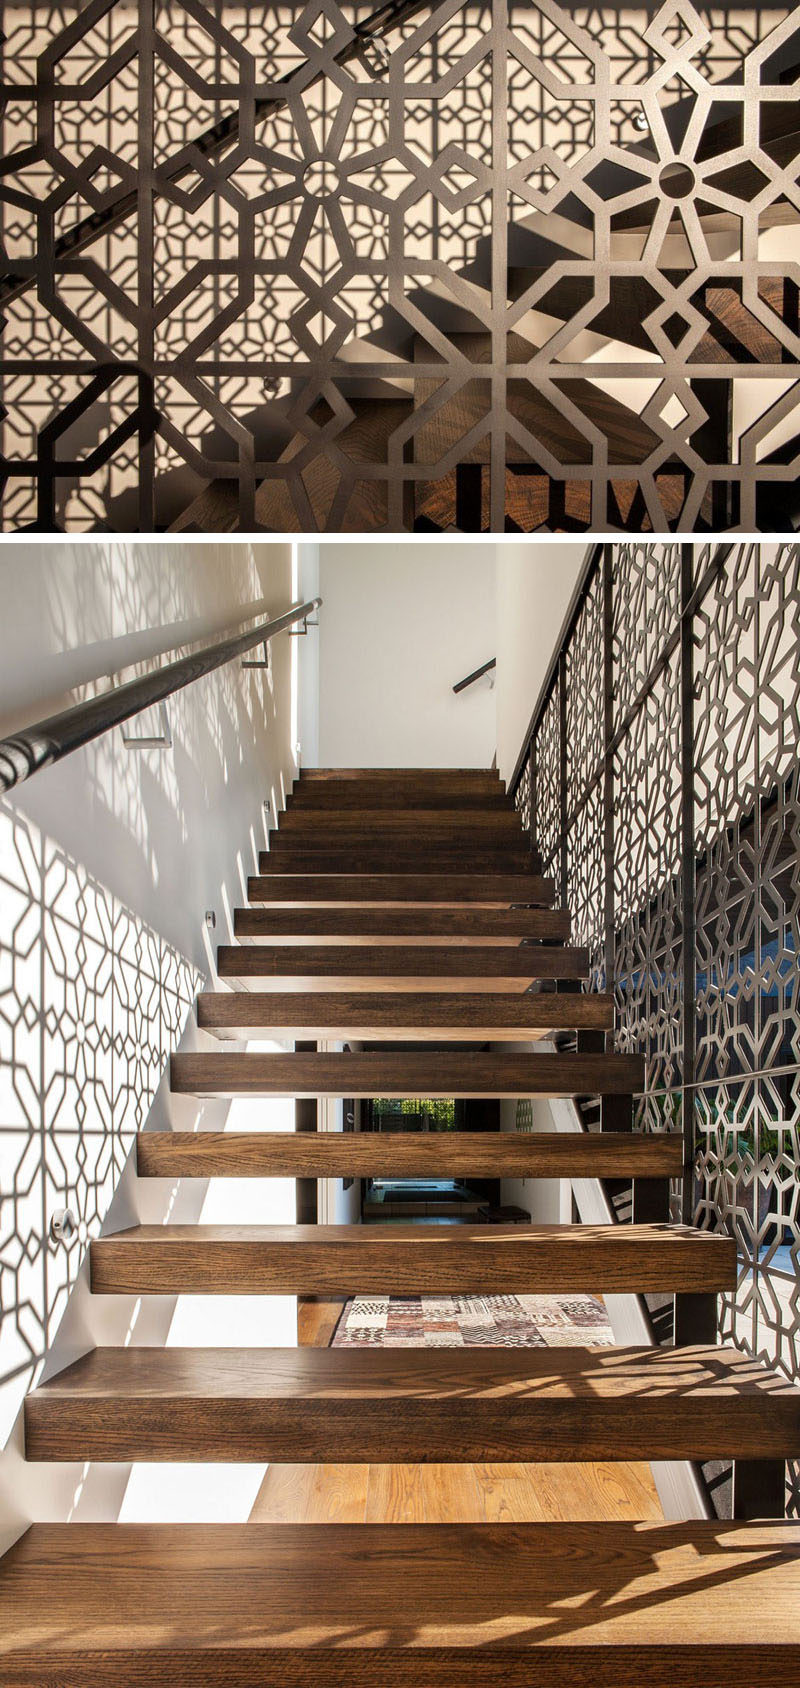 Художественный узор на перилах одной стороны этой лестницы не только создает уникальную деталь дизайна в доме, но и создает узор на противоположной стене, когда солнце светит через раздвижную стеклянную дверь.